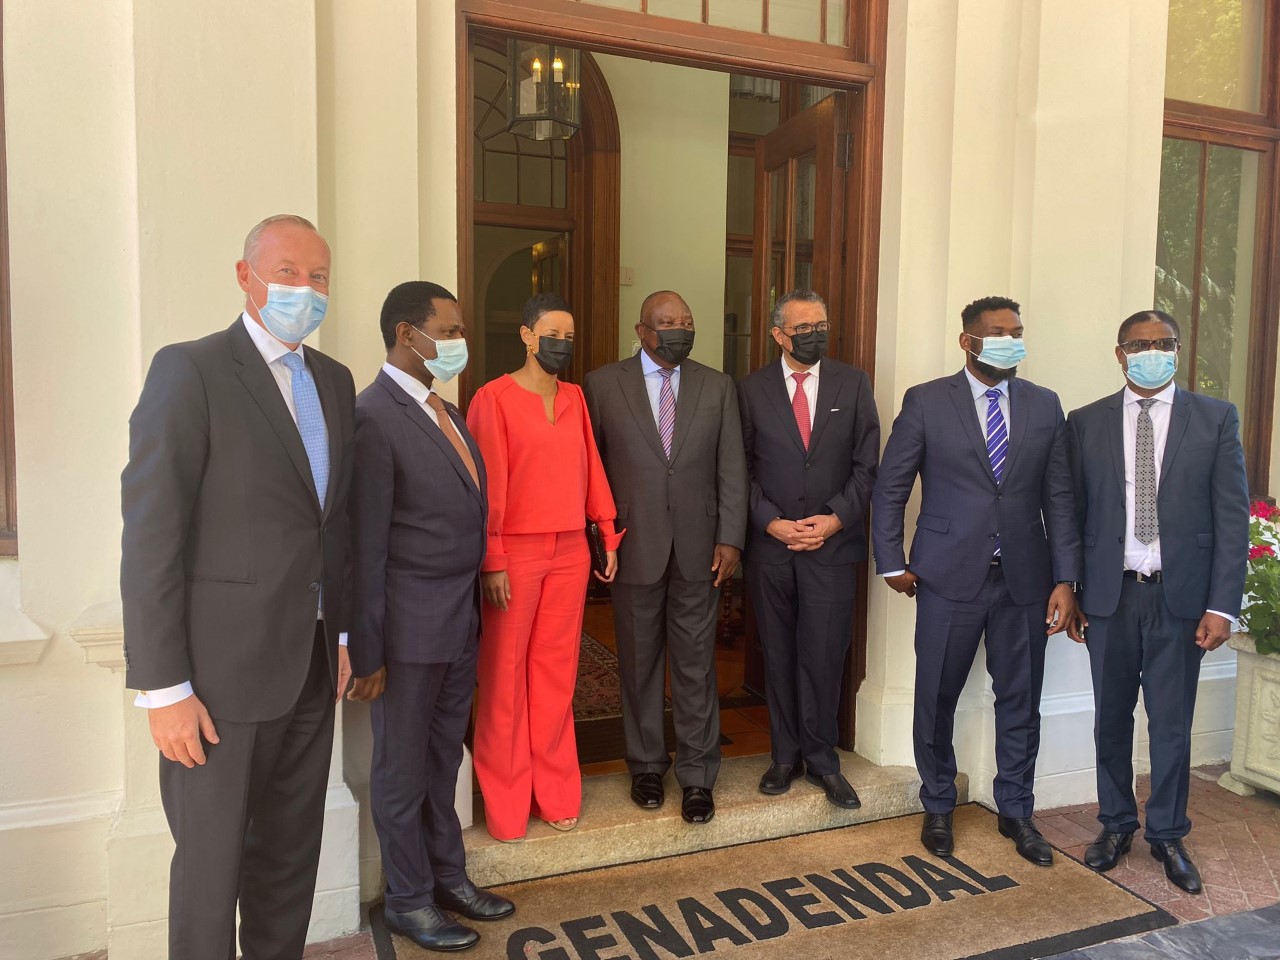 Meryame Kitir op bezoek bij Zuid-Afrikaanse president om over coronavaccin te praten